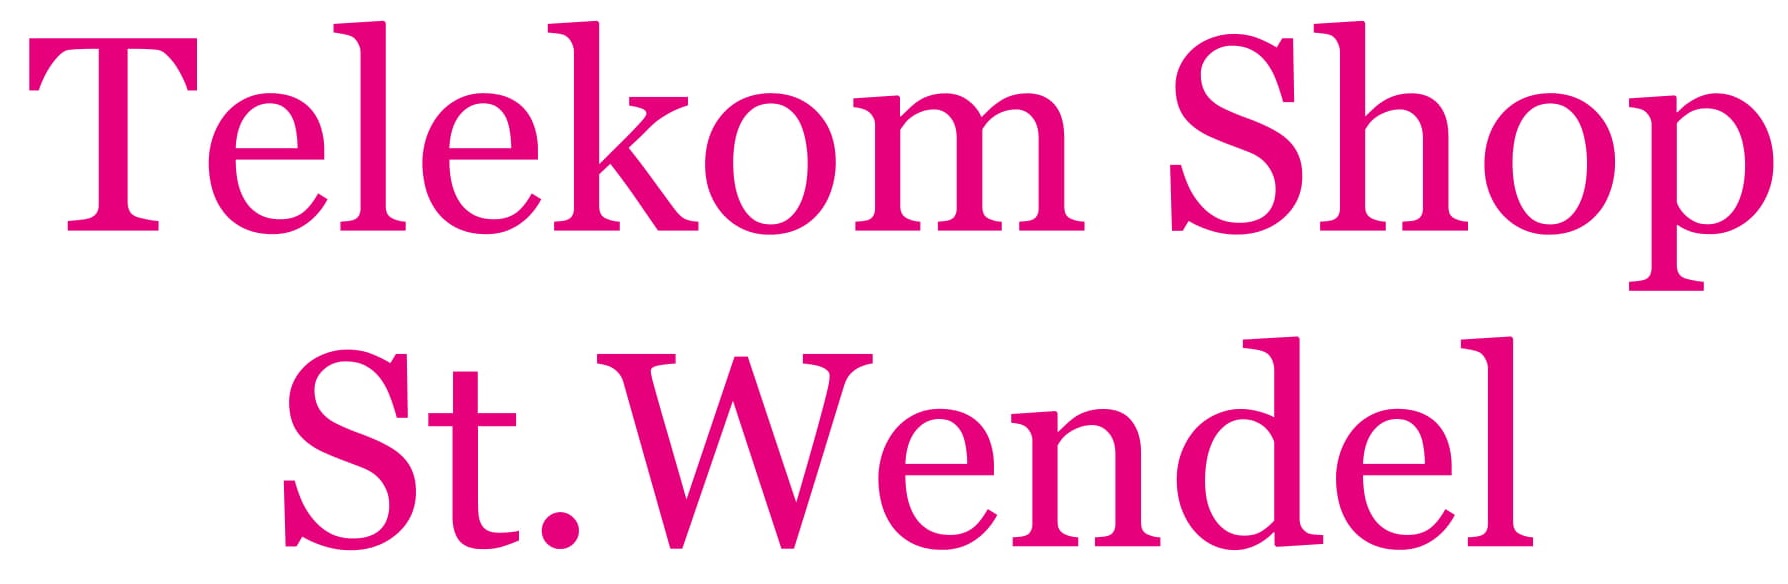 Telekom Shop
St. Wendel